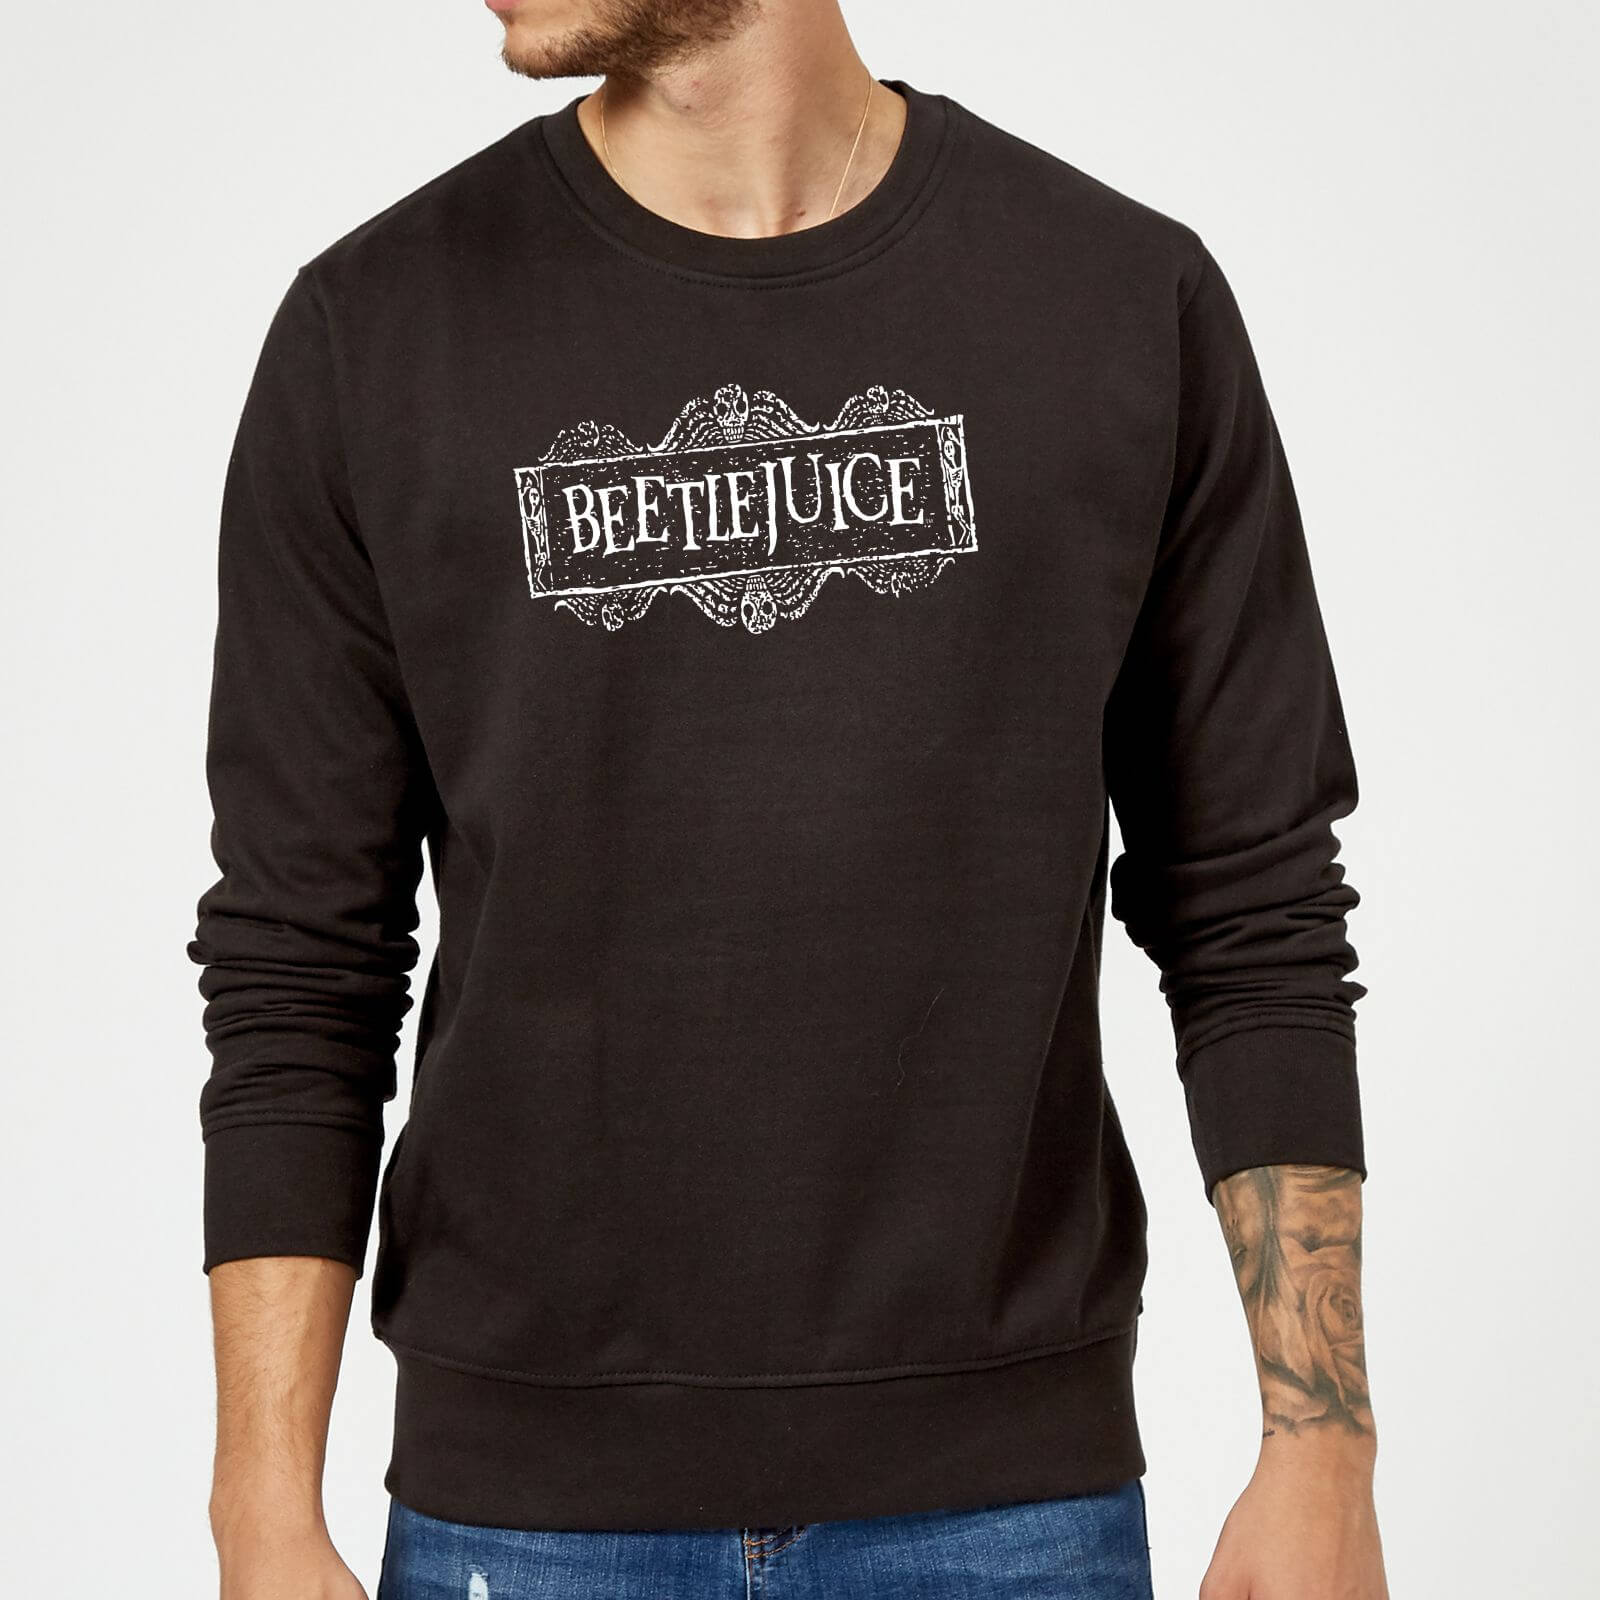 Beetlejuice White Logo Sweatshirt - Black - 5XL - Black